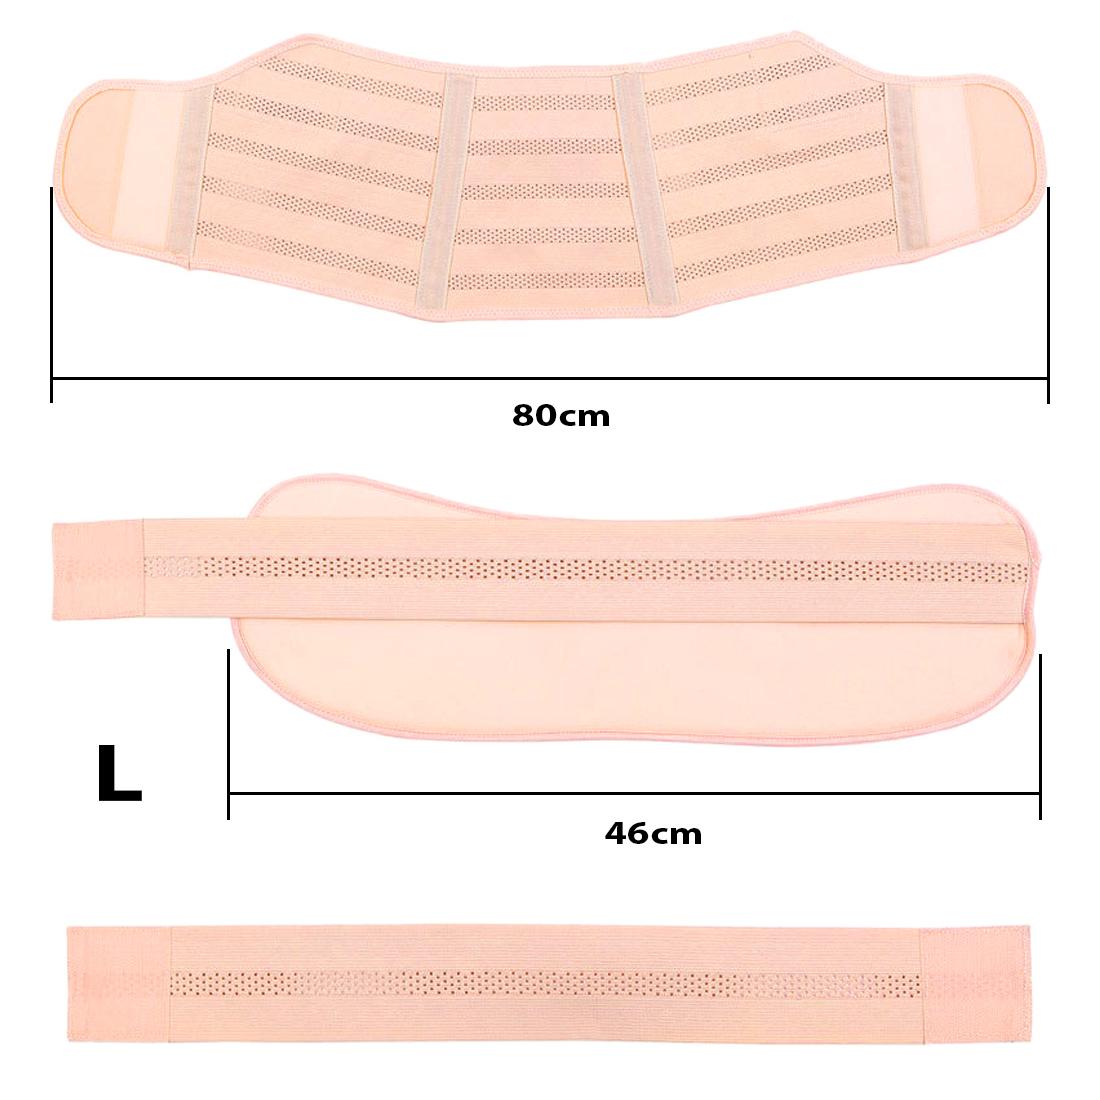 Фото 1 Бандаж для беременных эластичный пояс L на липучках UFT Bandage